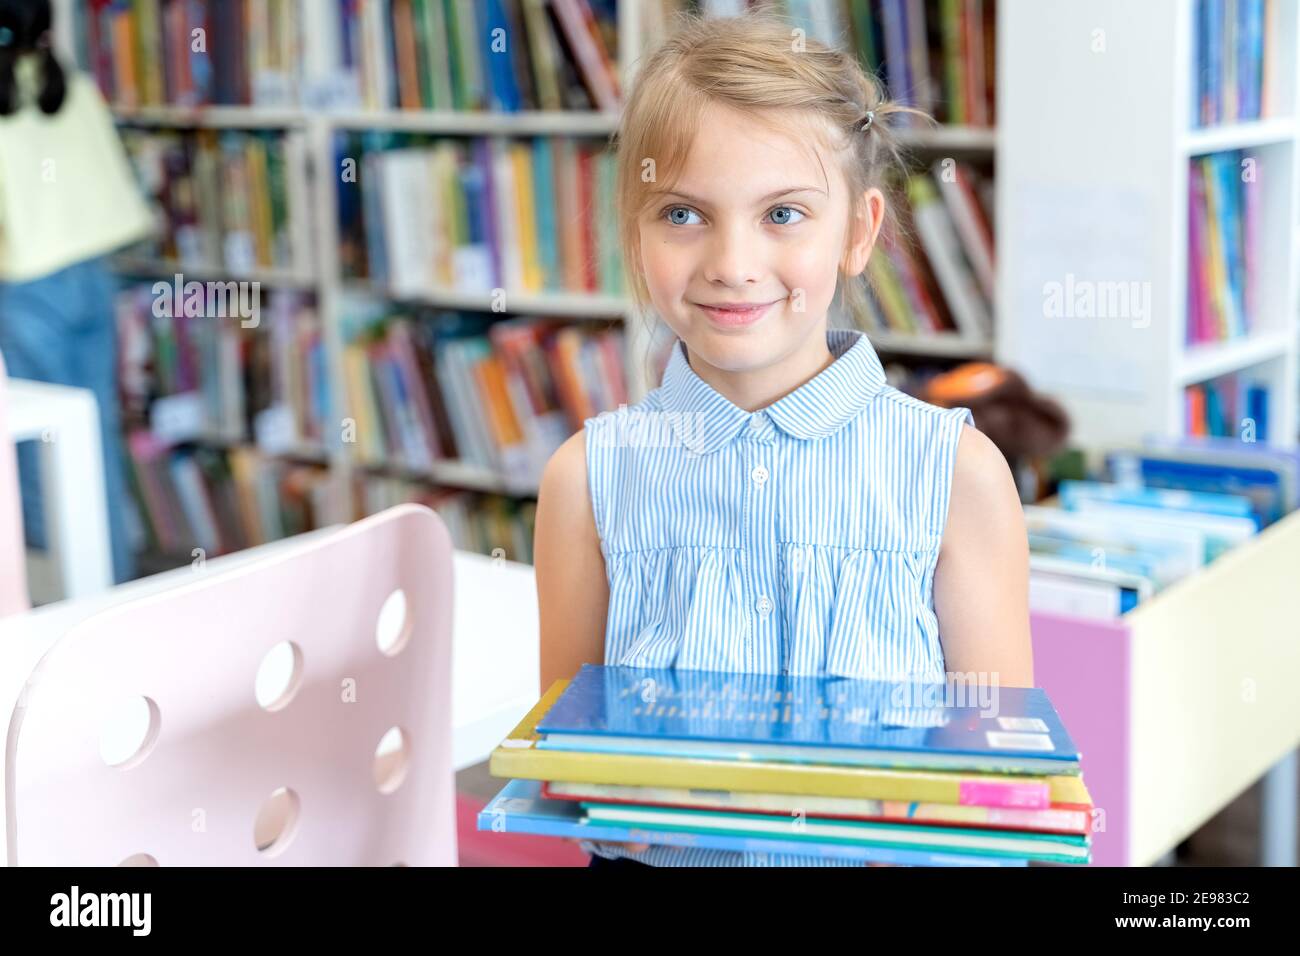 La bambina tiene una pila di libri con fiabe nella biblioteca dei bambini. Camera speciale per bambini. Mensole con libri interessanti e luminosi Foto Stock